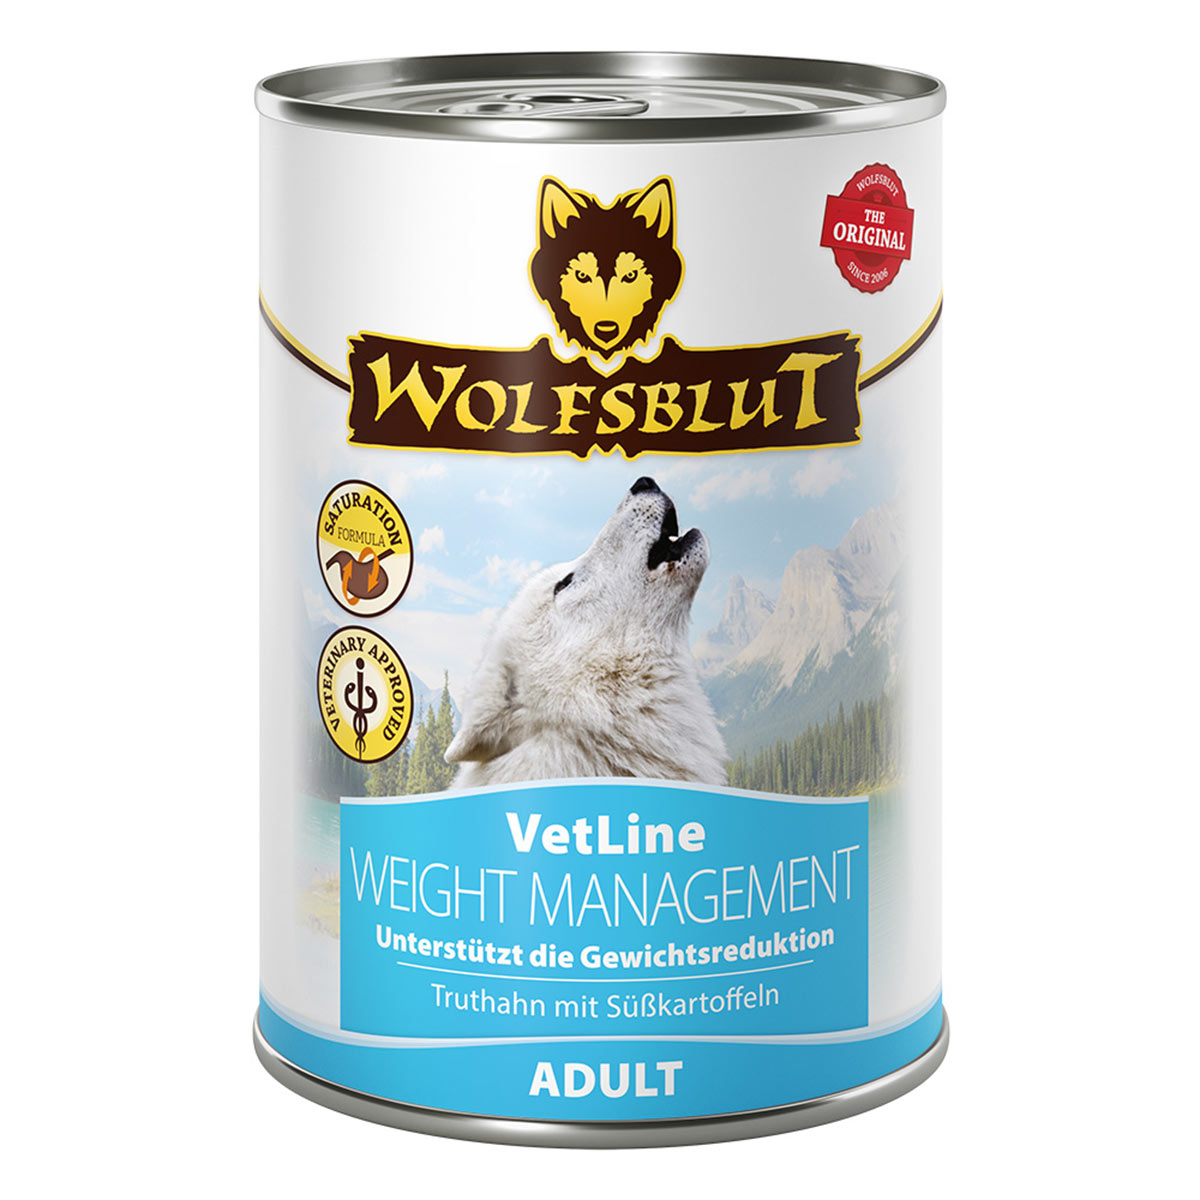 Wolfsblut VetLine Weight Management - Truthahn